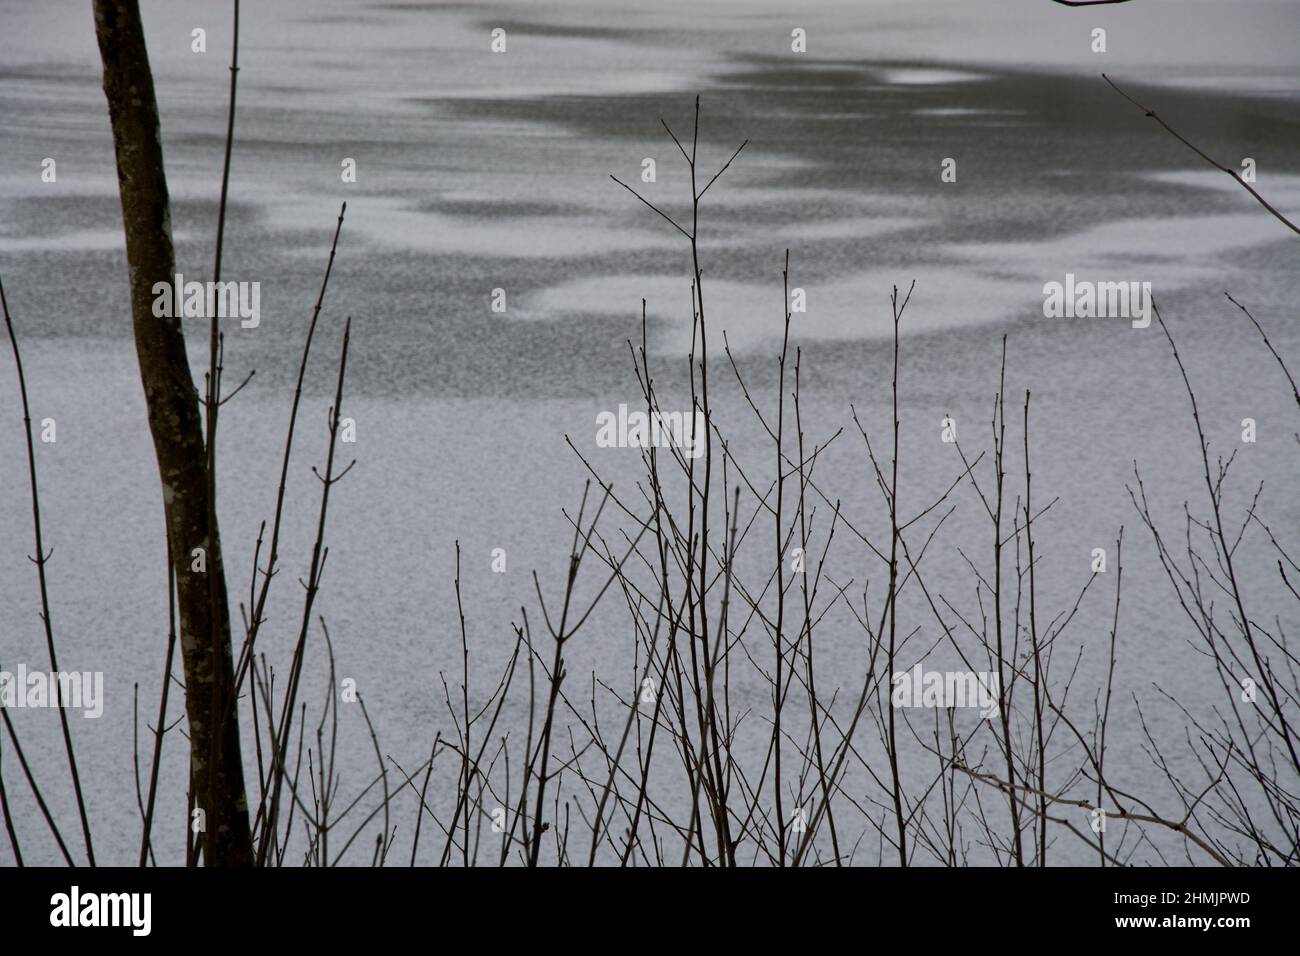 Schattierungen von schwarz und weiss auf einem gefrorenen Teich Foto de stock